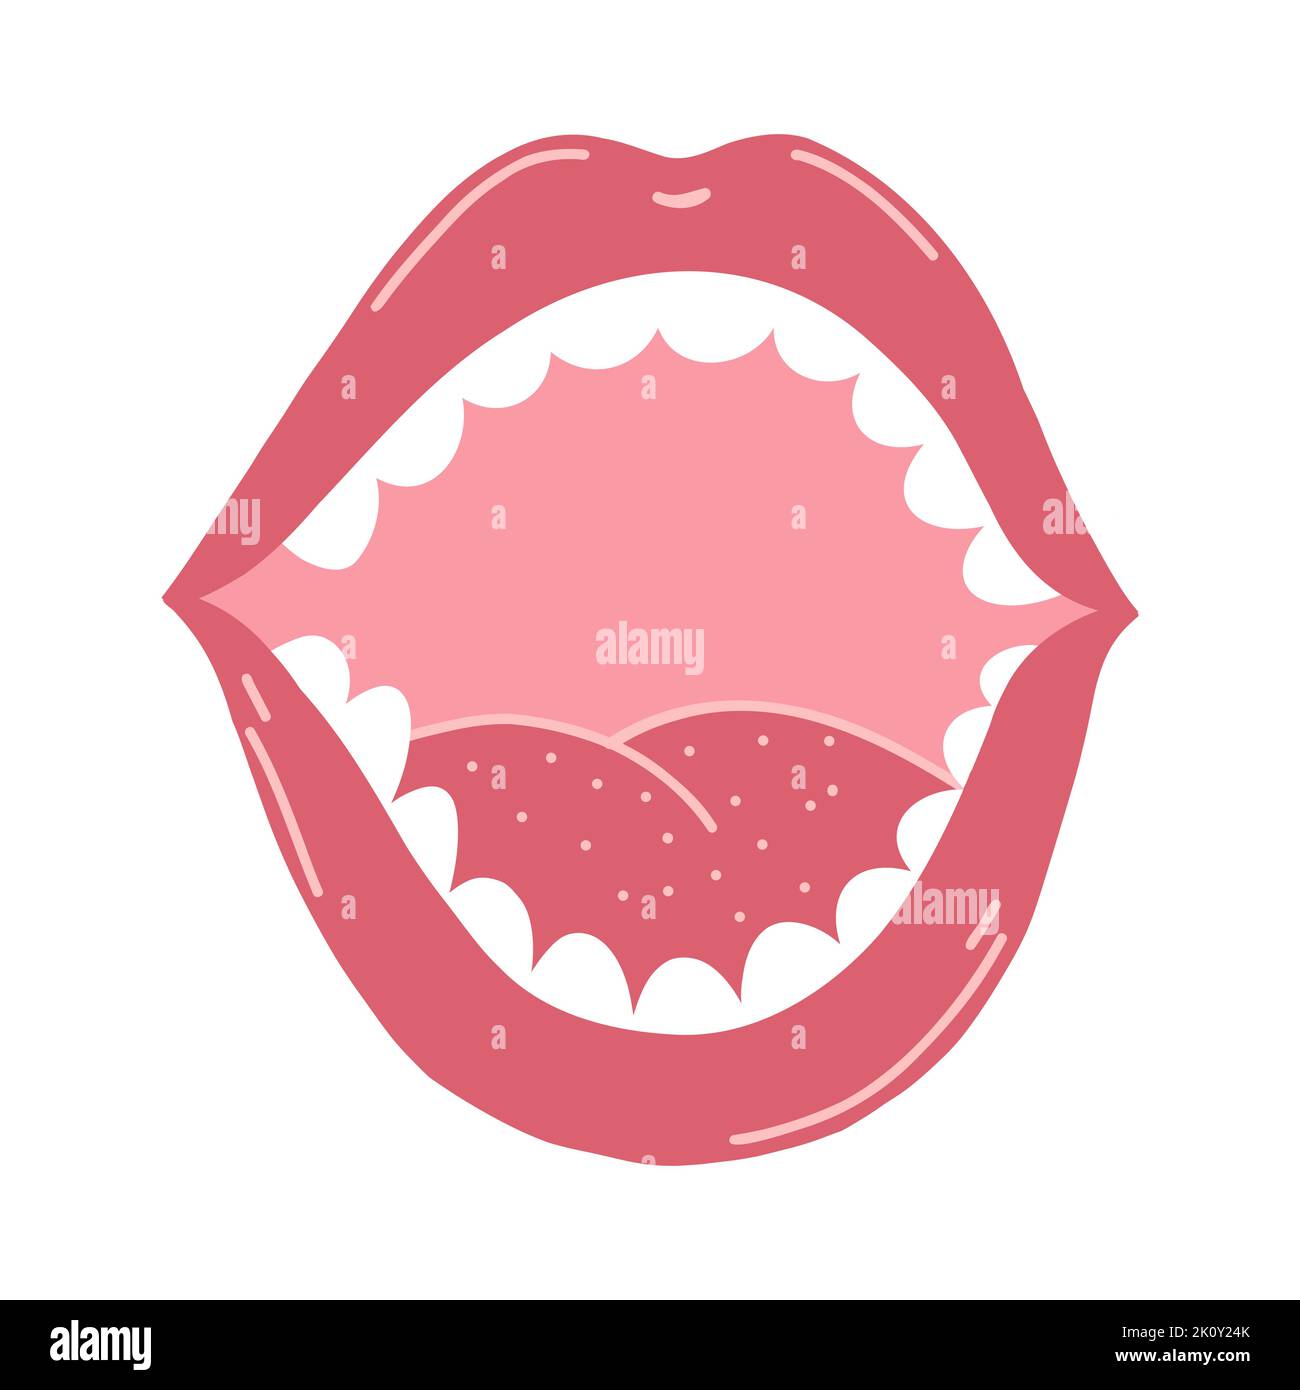 Offener Mund mit Zähnen in Cartoon-Flat-Stil. Handgezeichnete Vektordarstellung von menschlichen Lippen und Zunge für Aufkleber, Webdesign, Poster, Postkarte Stock Vektor